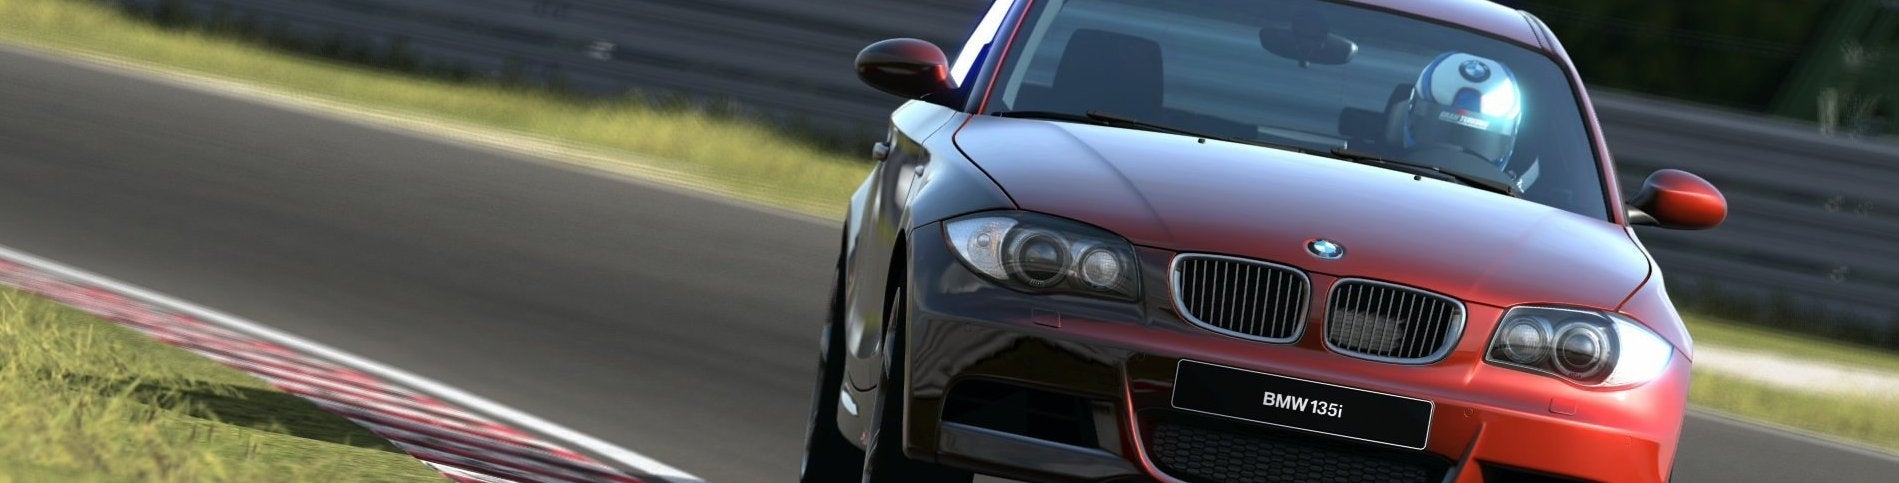 Afbeeldingen van Gran Turismo 7 komt naar PlayStation 4 in 2015/2016